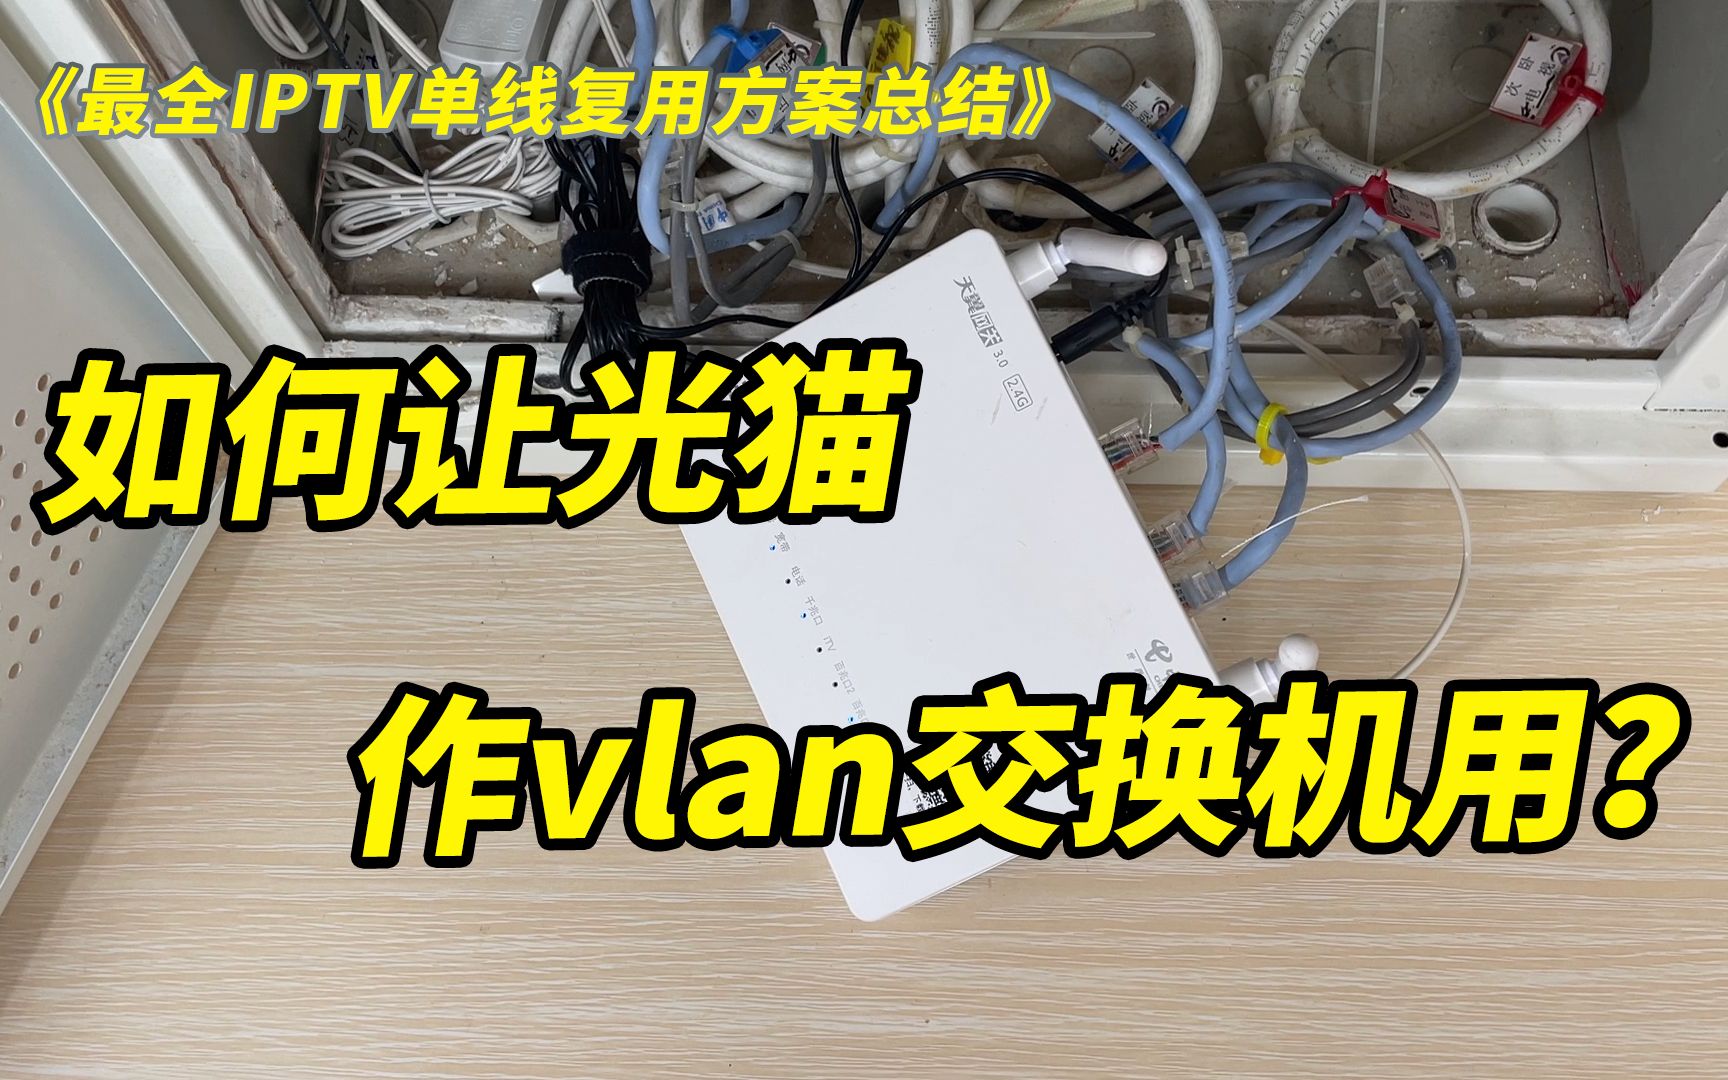 【实操篇】最全IPTV单线复用方案总结+TP-LINK vlan交换机设置教程